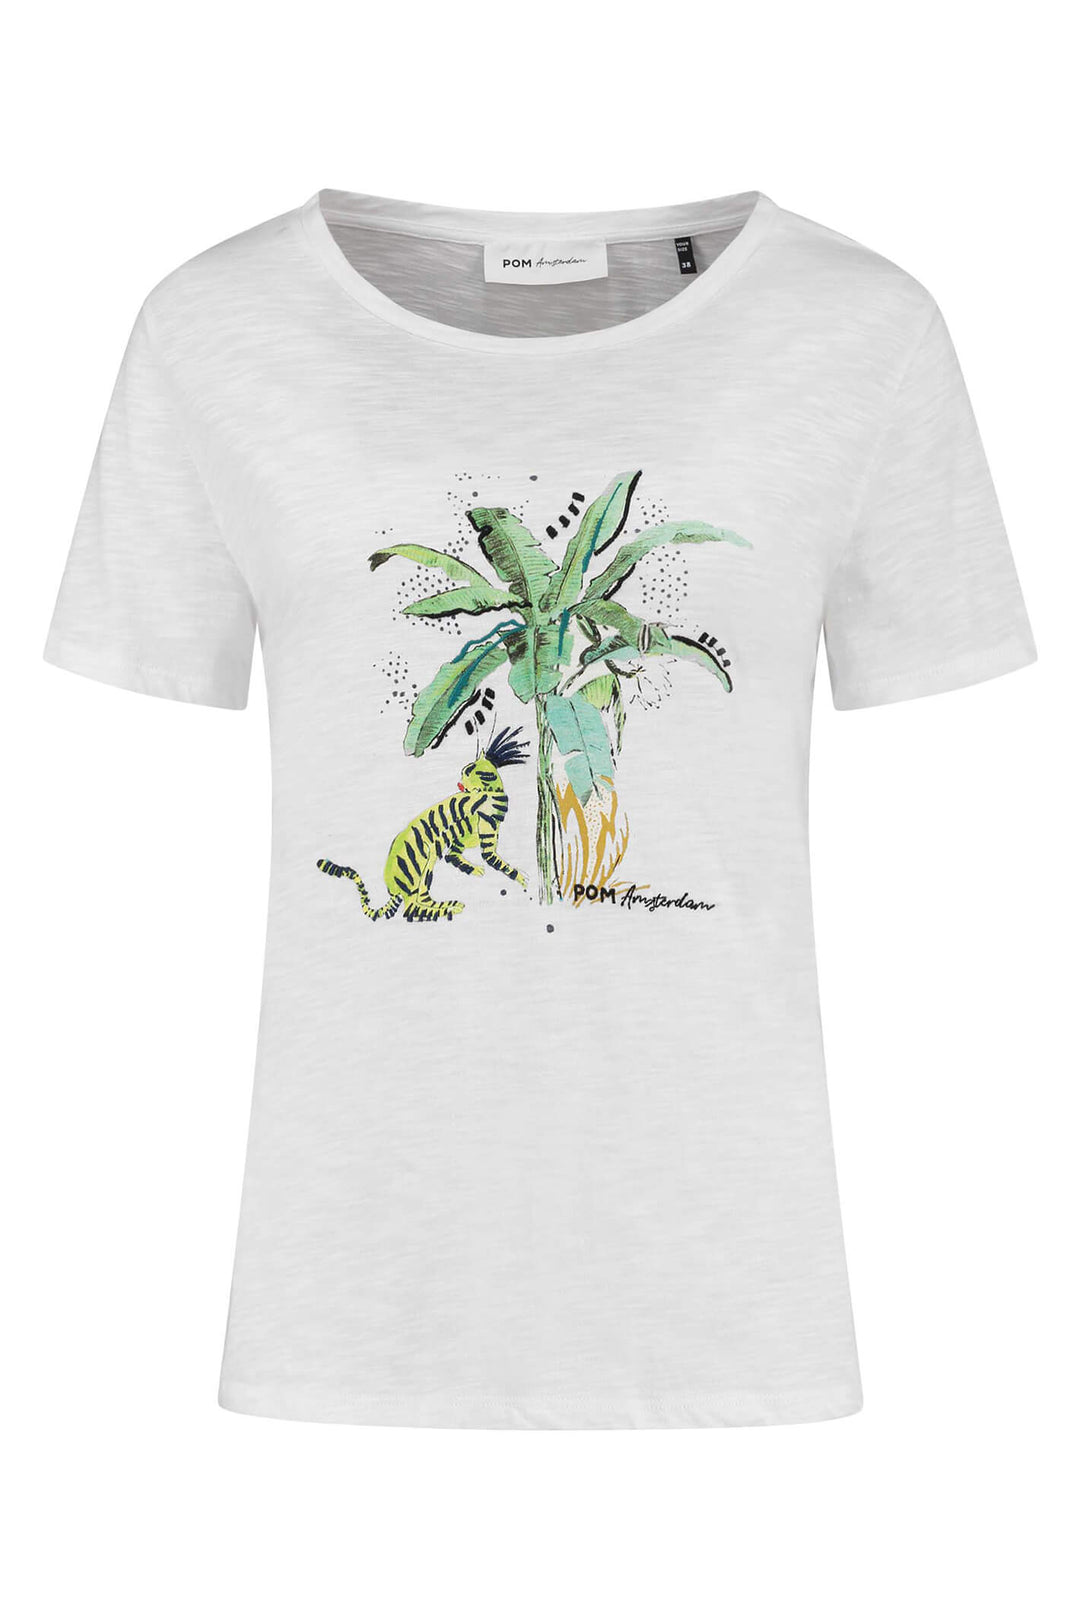 POM Amsterdam SP6809 Sunny Tiger T-Shirt - Shirley Allum Boutique